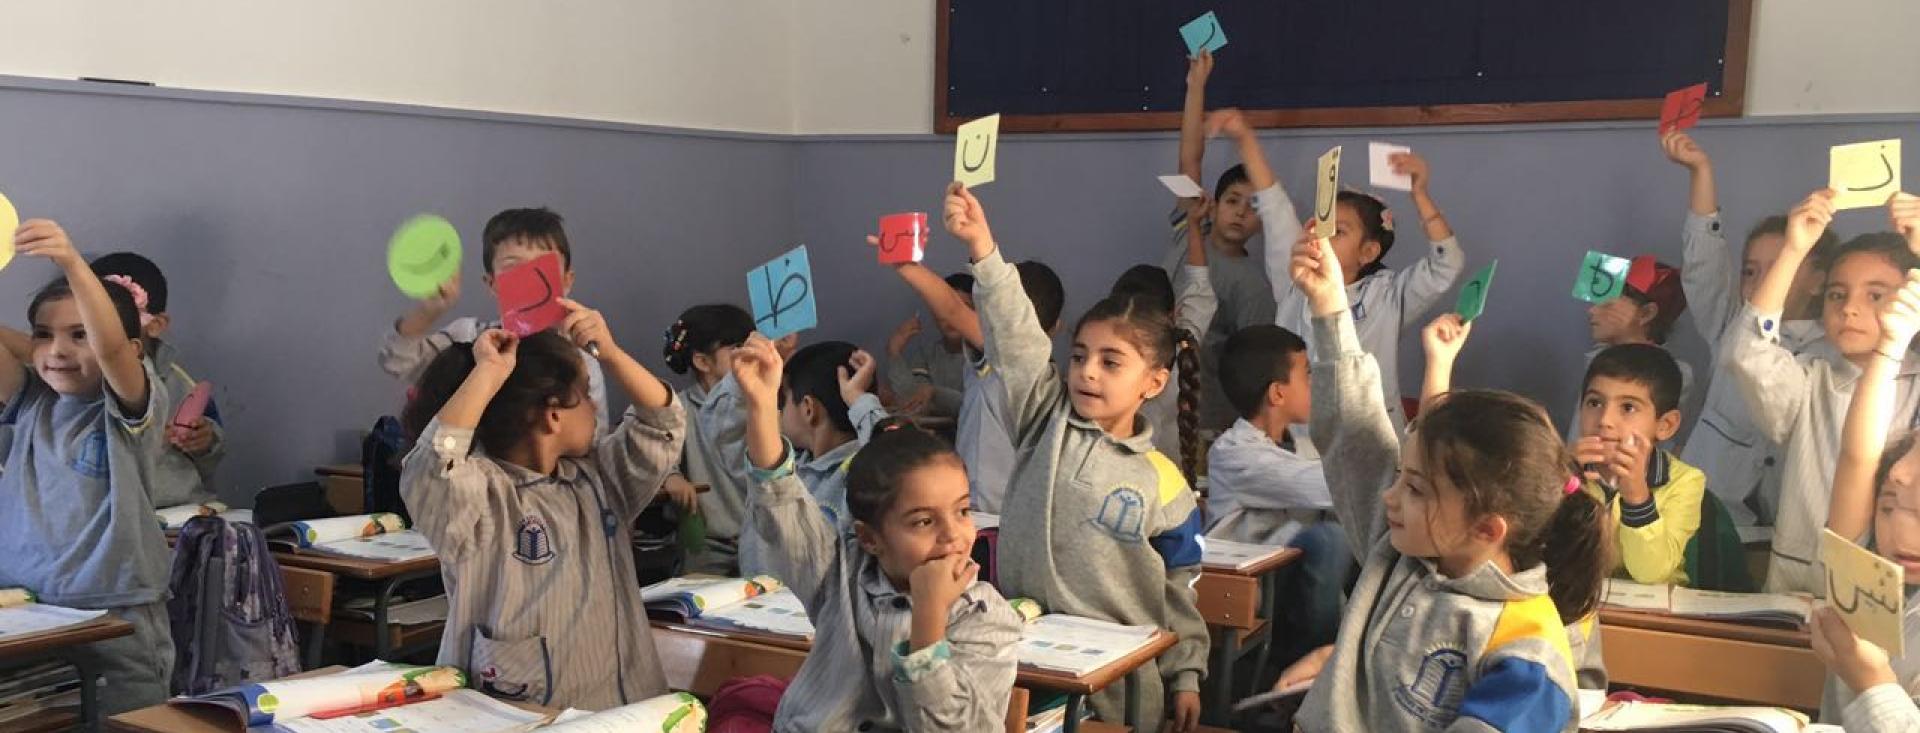 Niños pequeños con uniformes escolares llenan un aula, sentados en filas. Los libros están abiertos en sus escritorios. Los estudiantes levantan tarjetas de colores, cada una con una letra del alfabeto árabe. Algunos están sentados, mientras que el resto está de pie con las manos levantadas.